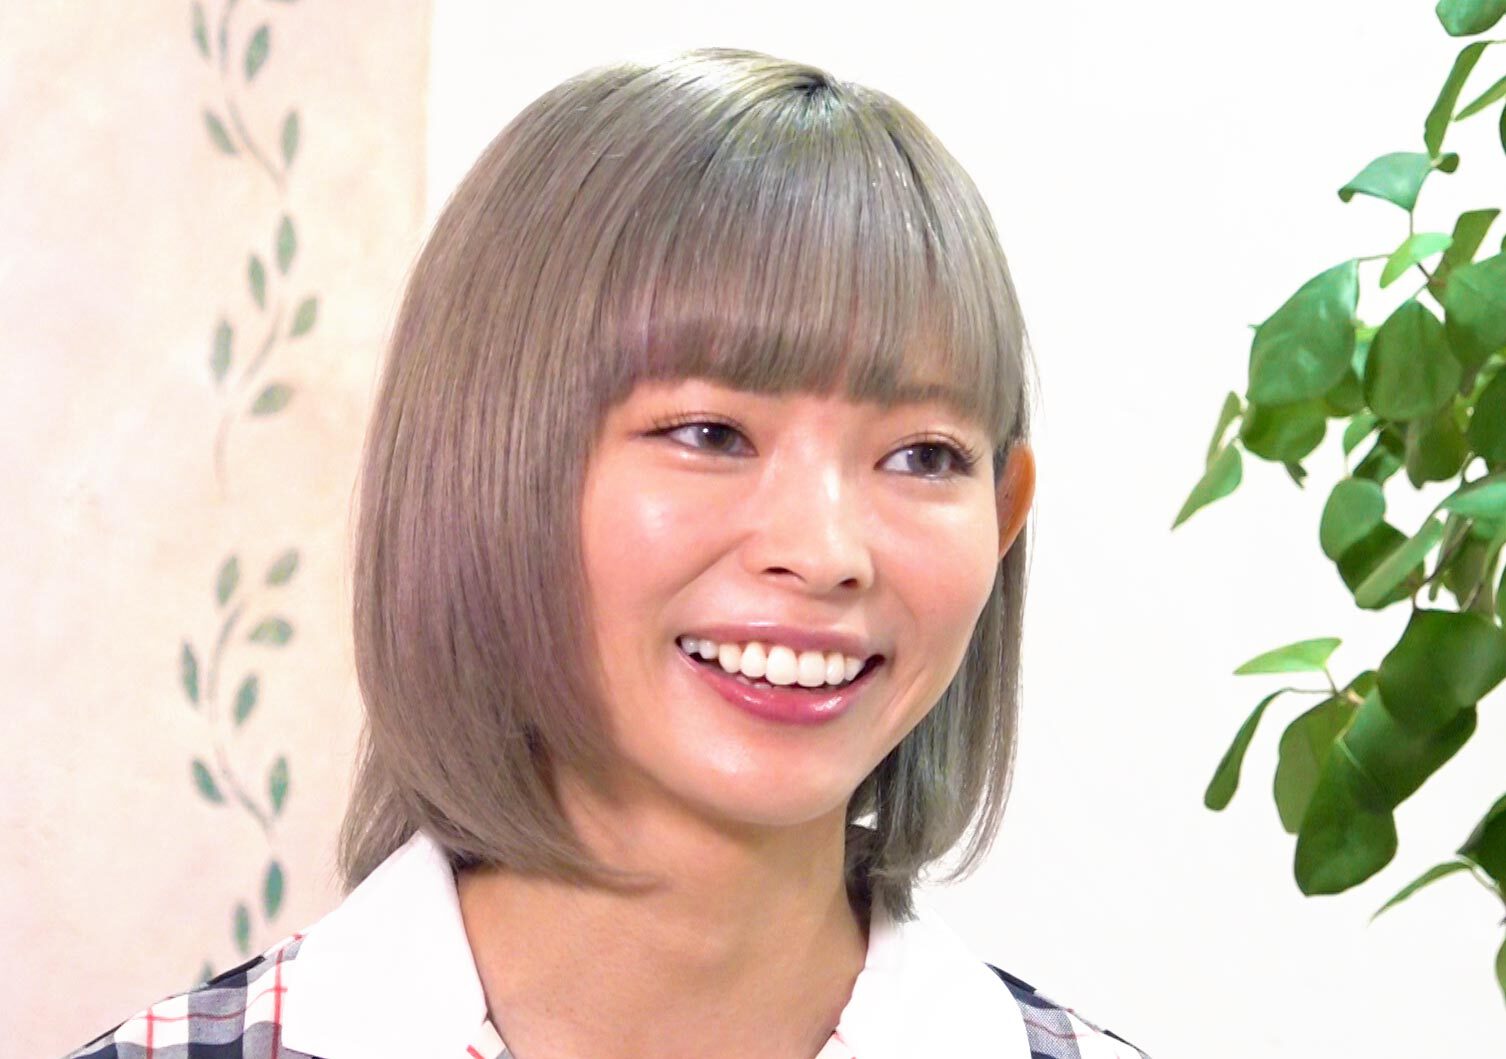 TOKYO MX（地上波9ch）の番組「らしく～My Story～」が9月26日（土）17時55分から、「LGBT」をテーマに放送。
「ぼくはバイセクシュアル」と公表した最上もがさんの素顔に迫り、「自分らしく」生きる姿を特集した。